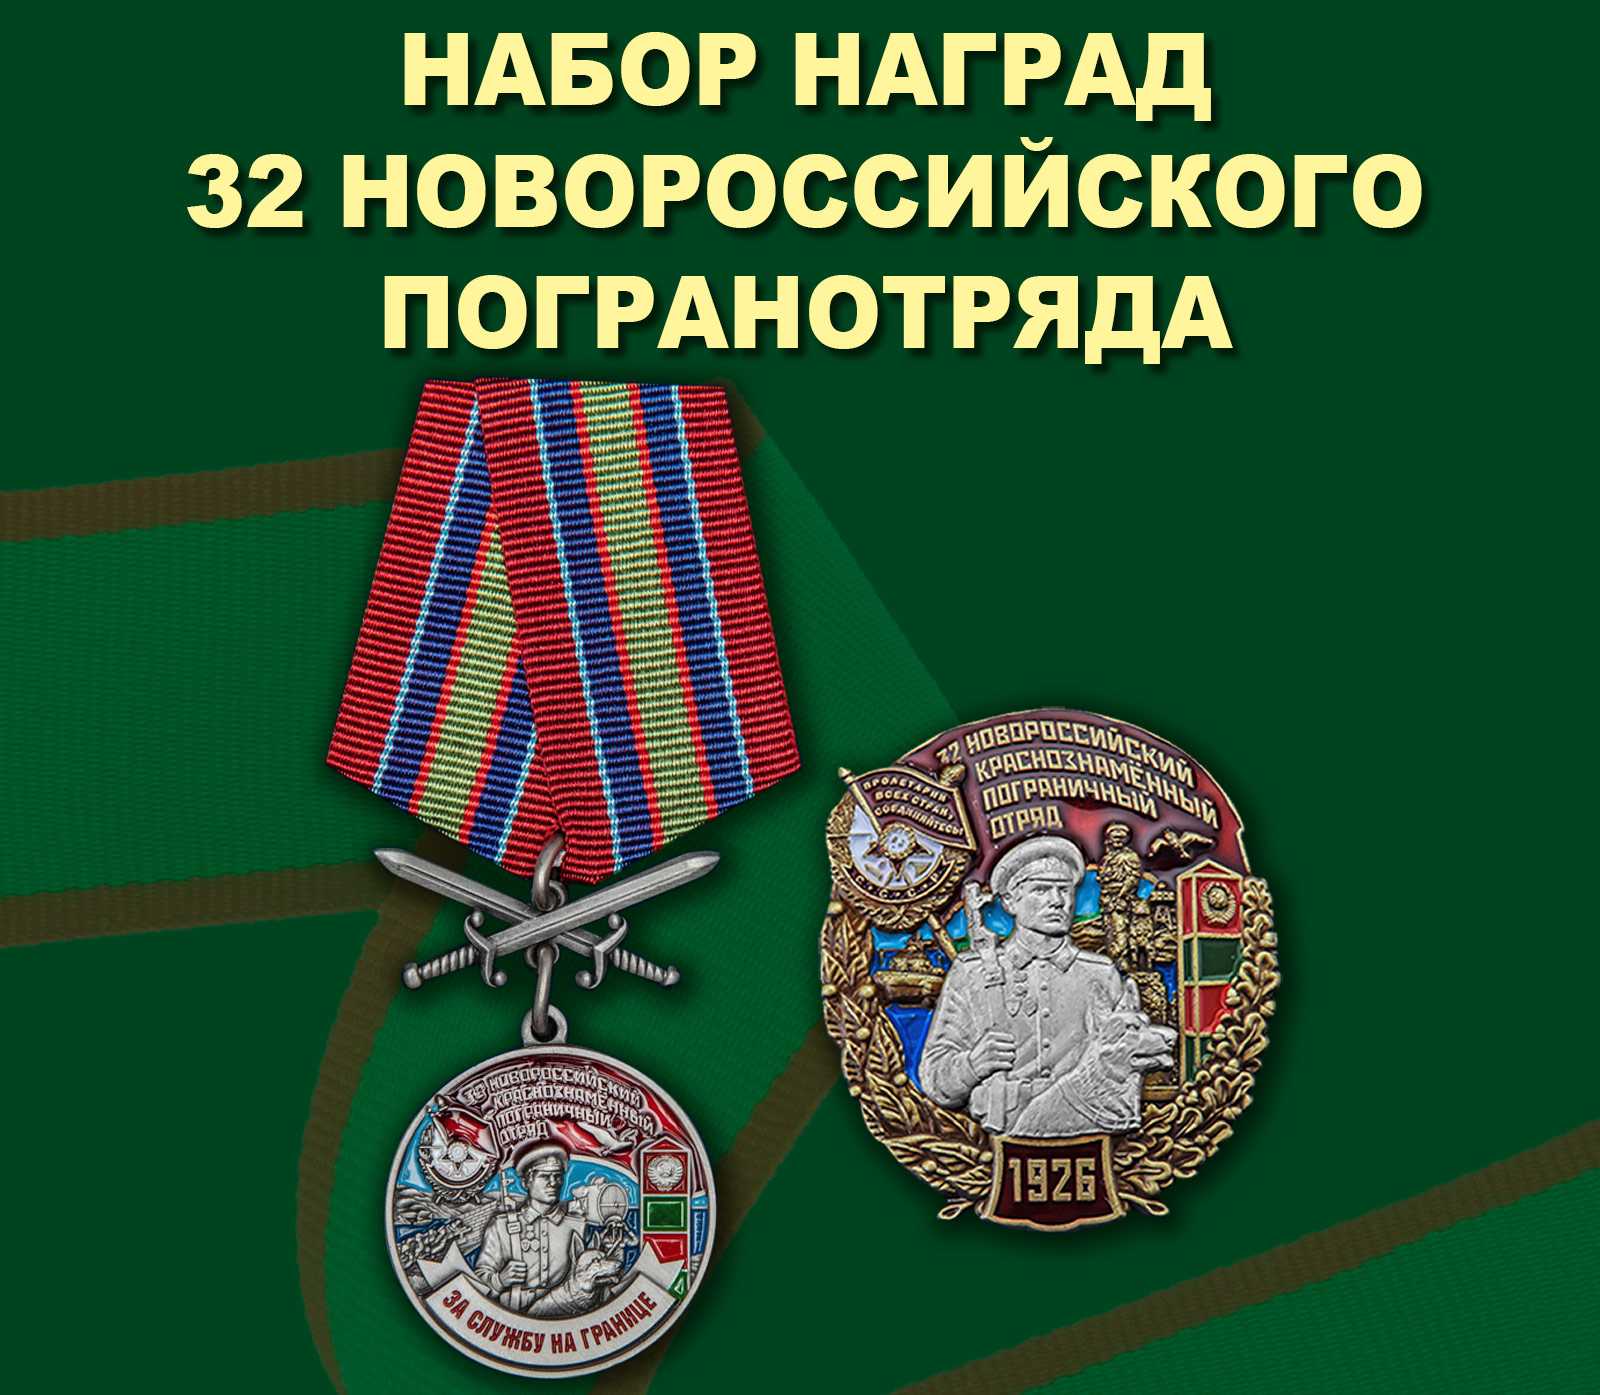 Купить набор наград 32 Новороссийского погранотряда